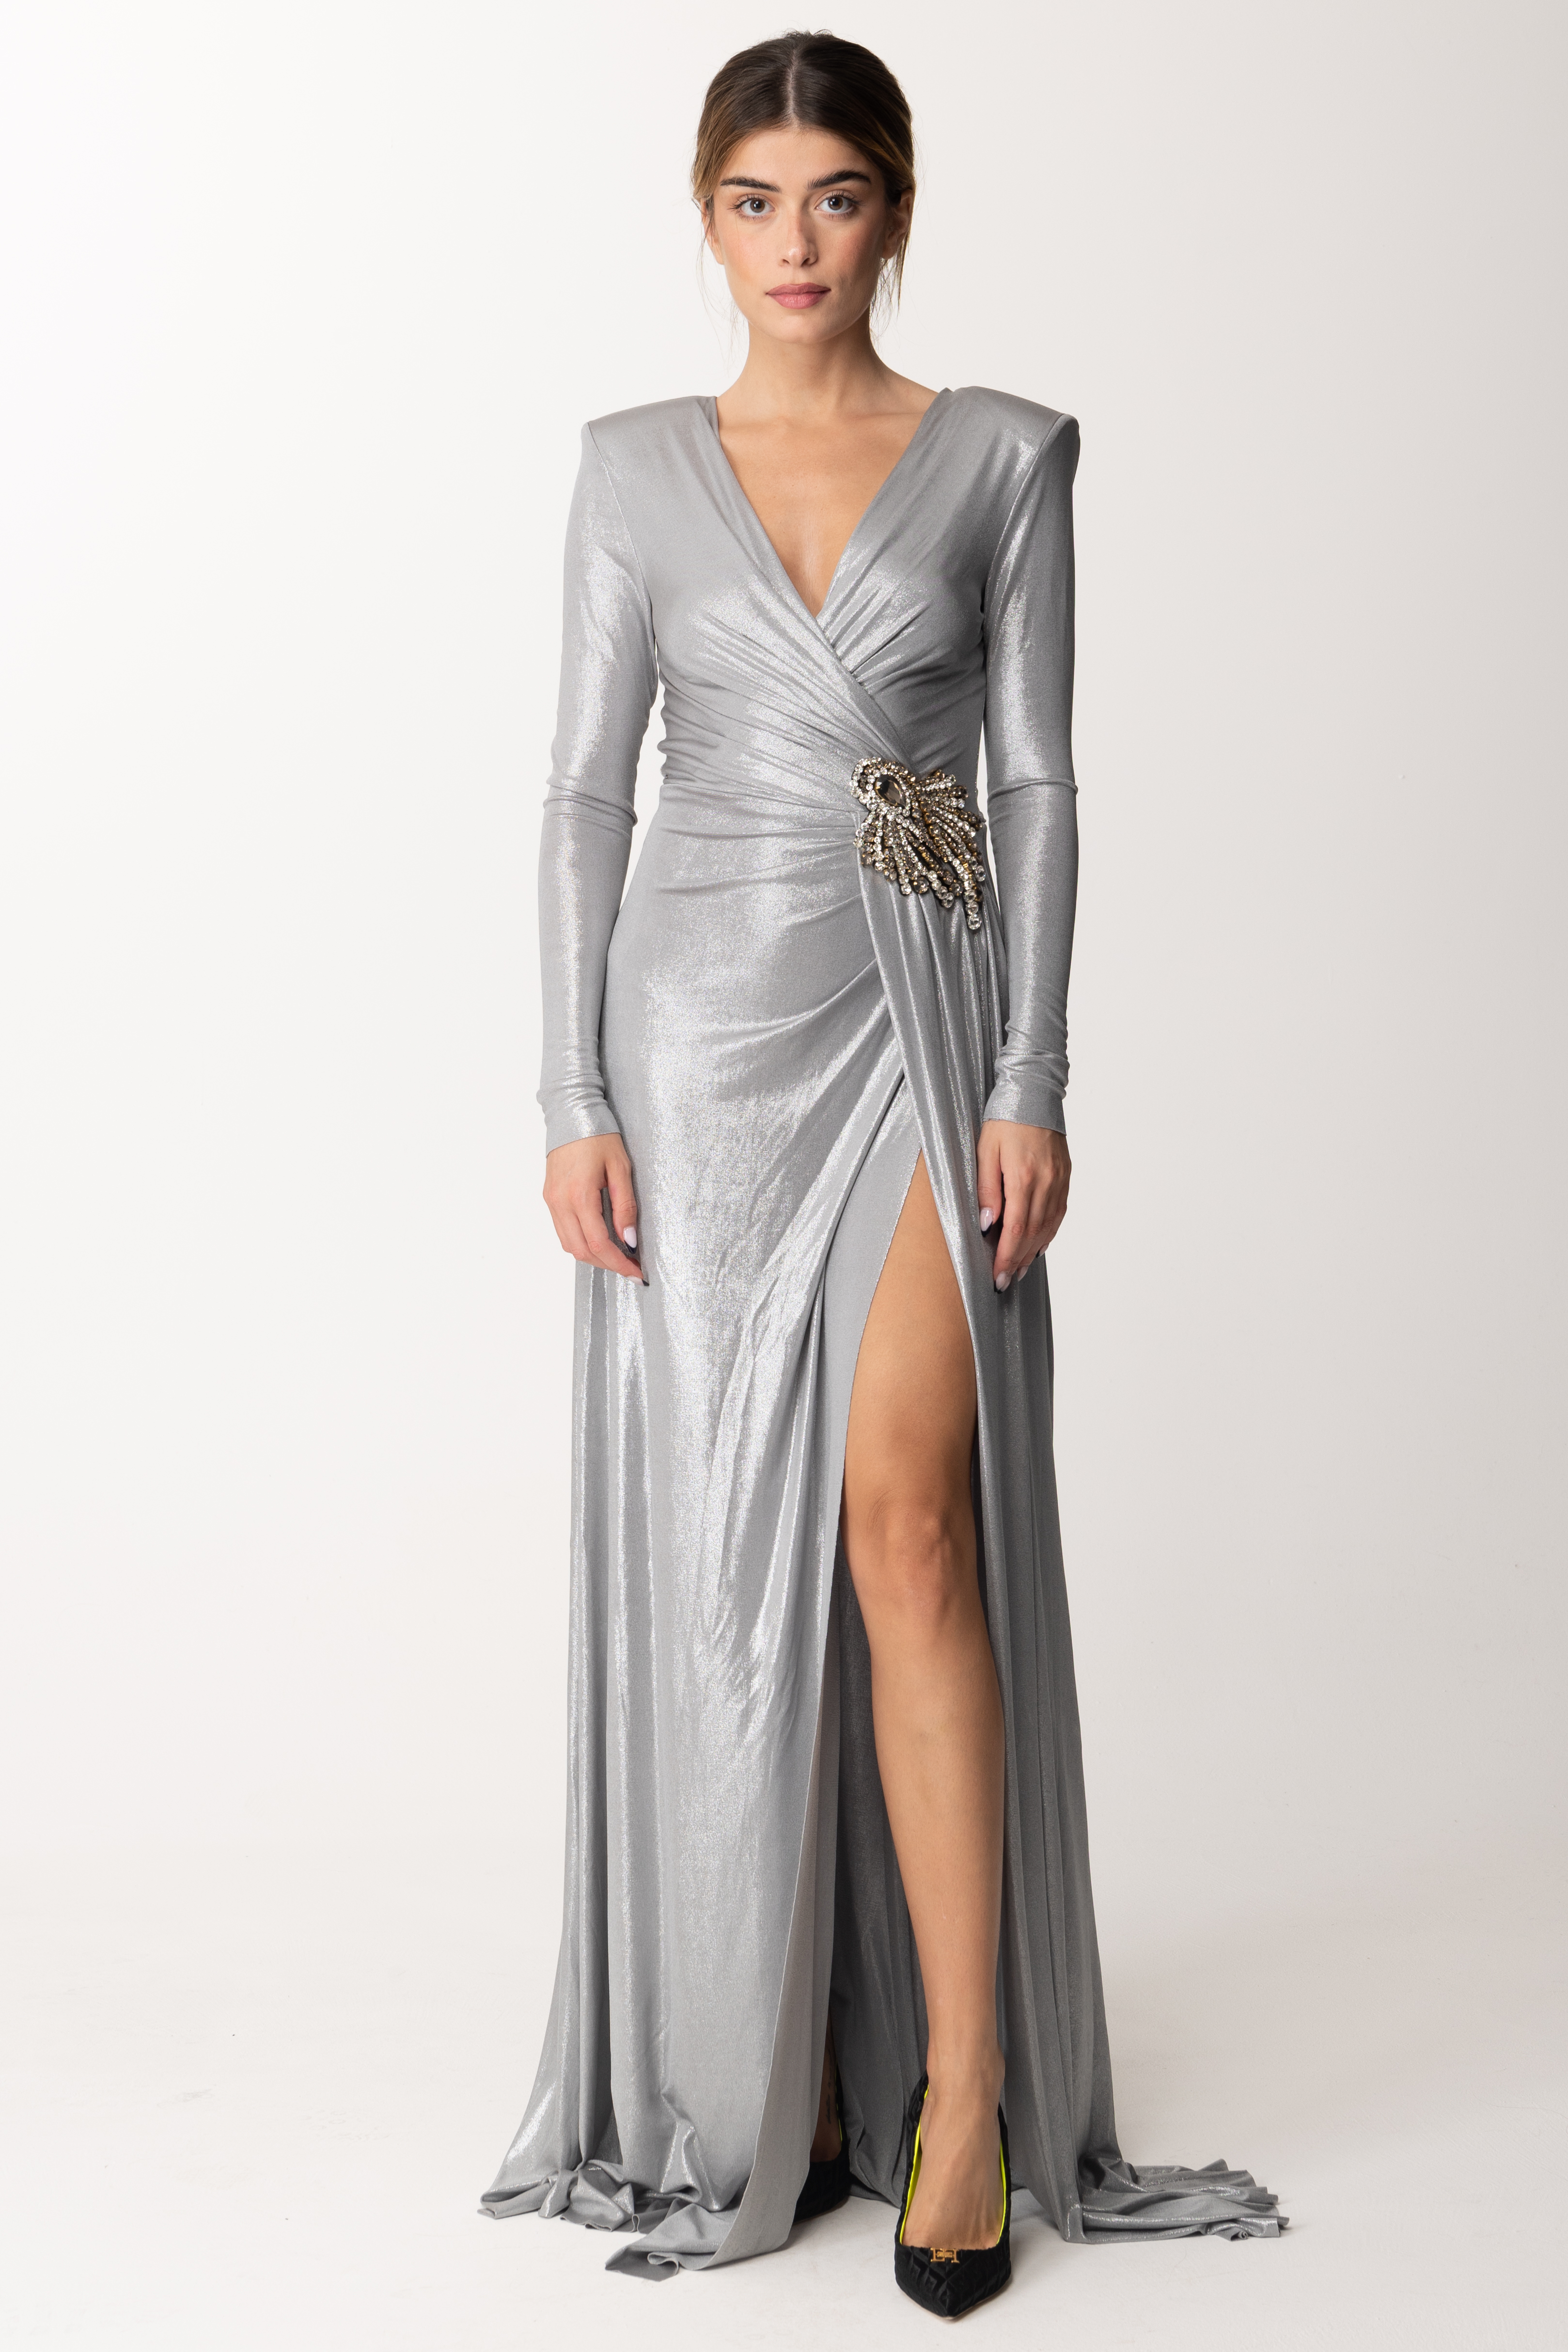 Podgląd: Marco Bologna Długa srebrna sukienka Silver